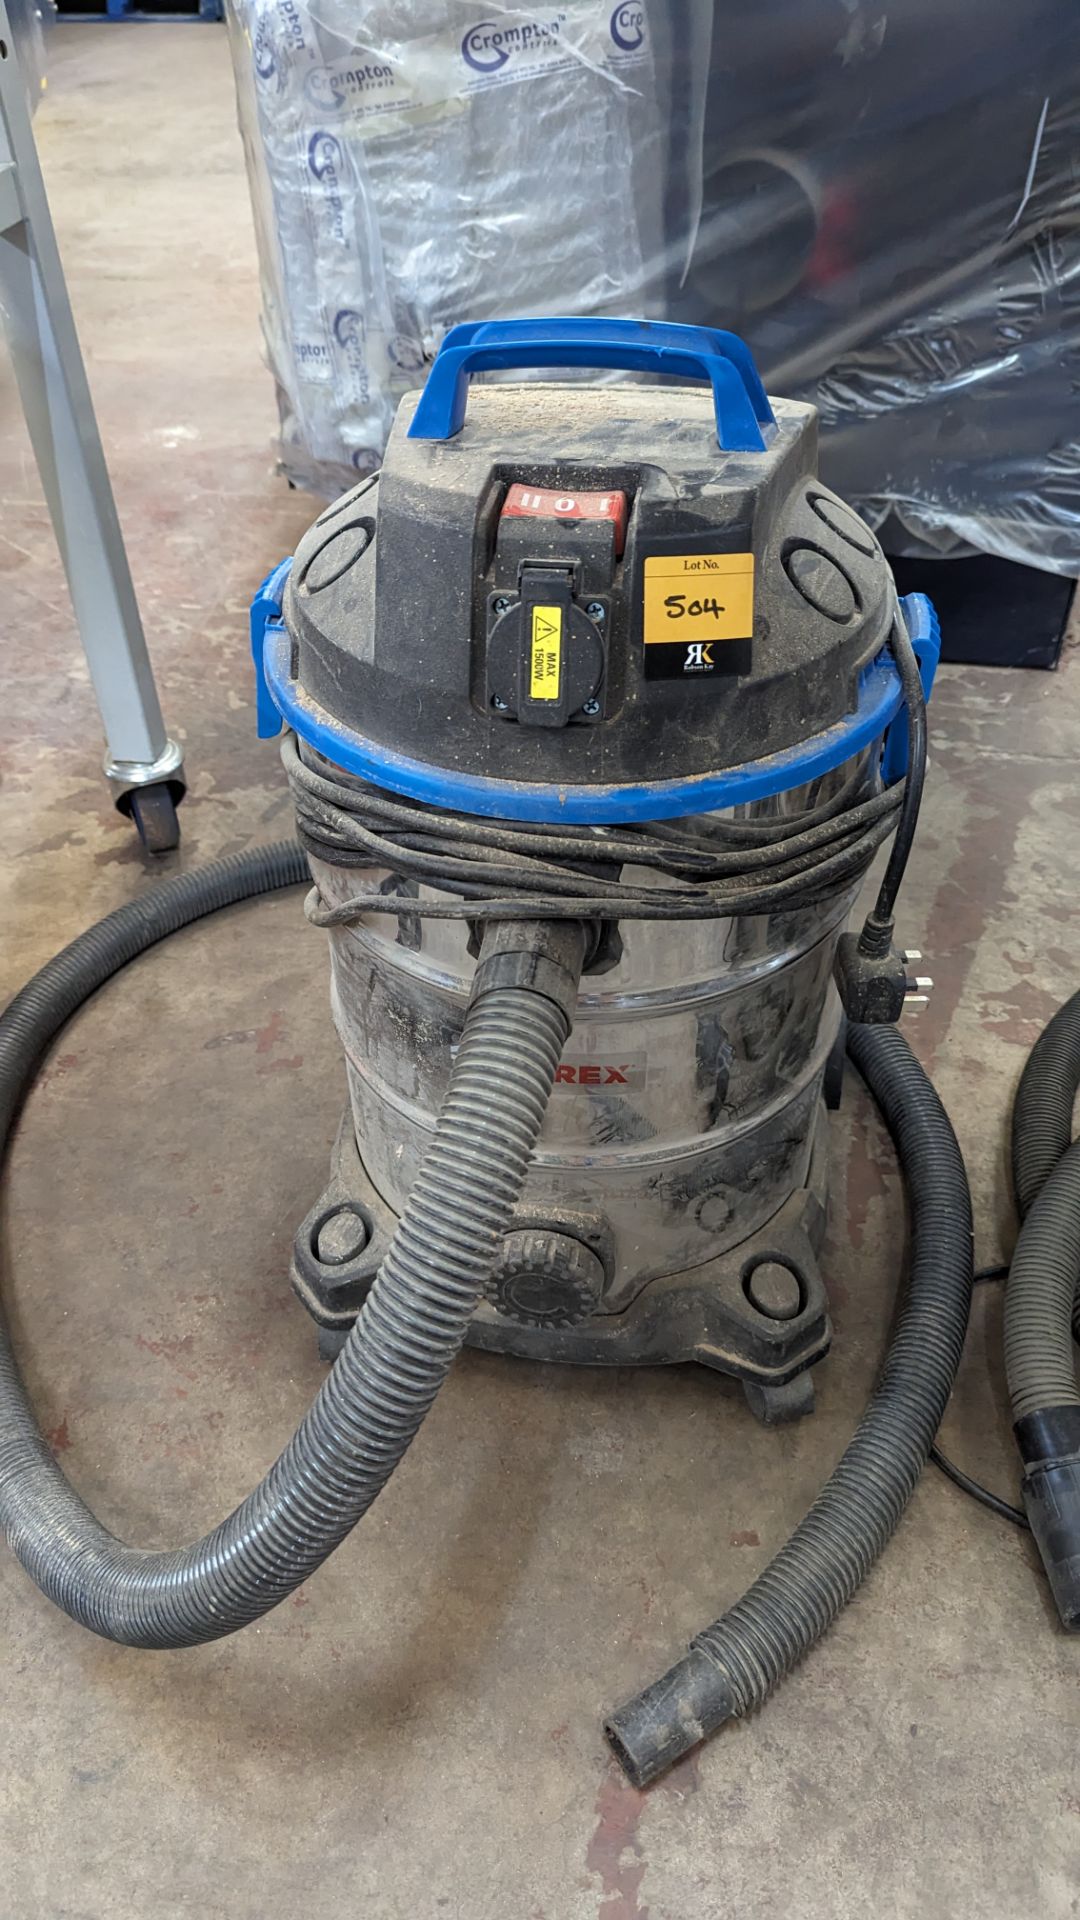 Ferrex industrial vacuum cleaner - Image 2 of 4